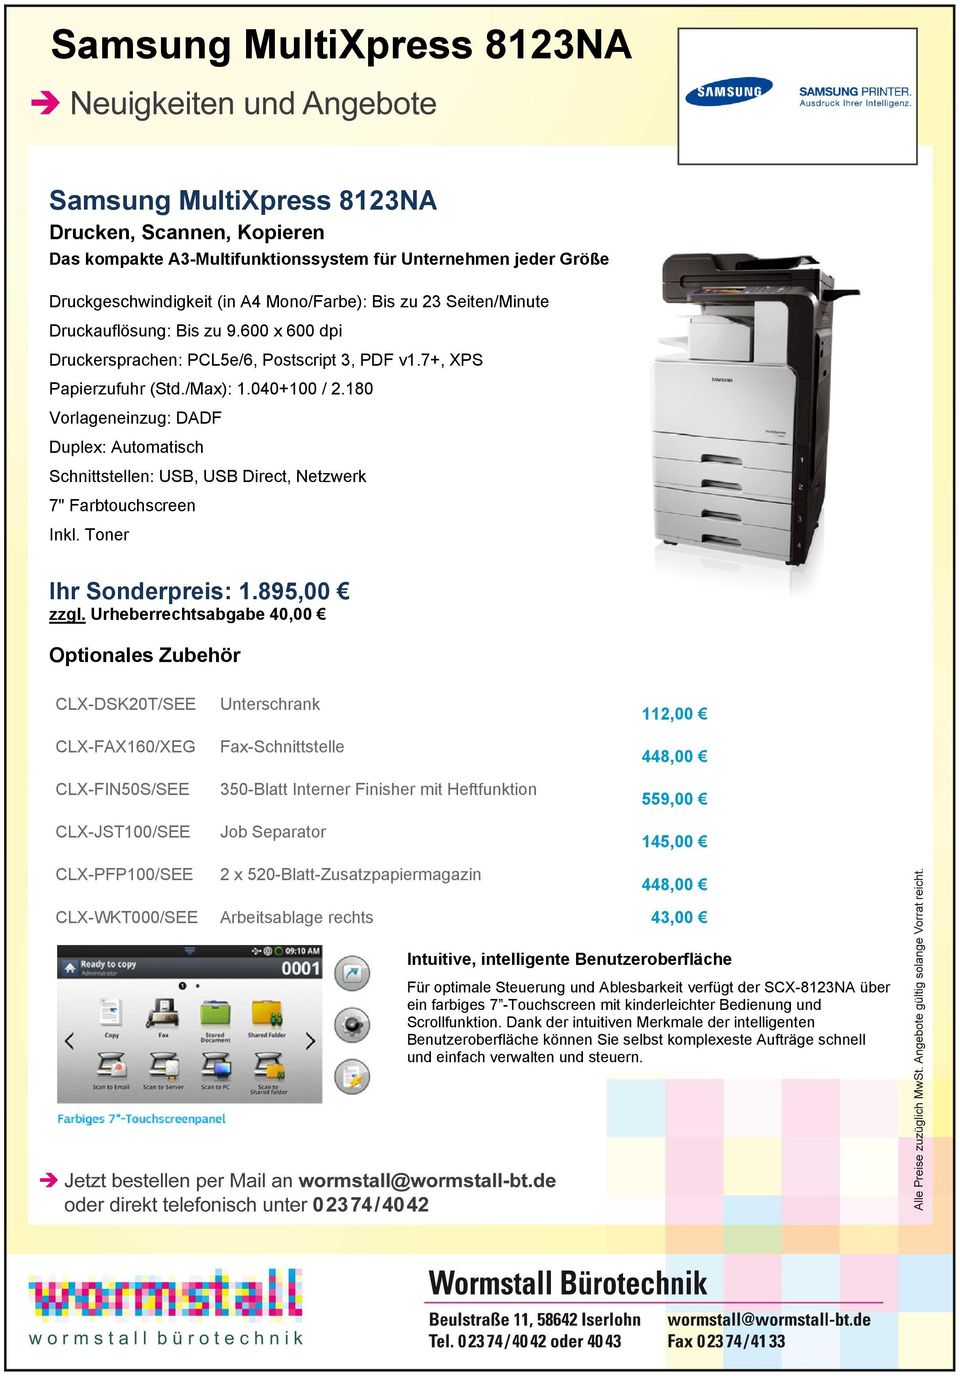 180 Vorlageneinzug: DADF Duplex: Automatisch Schnittstellen: USB, USB Direct, Netzwerk 7" Farbtouchscreen Inkl. Toner Ihr Sonderpreis: 1.895,00 zzgl.